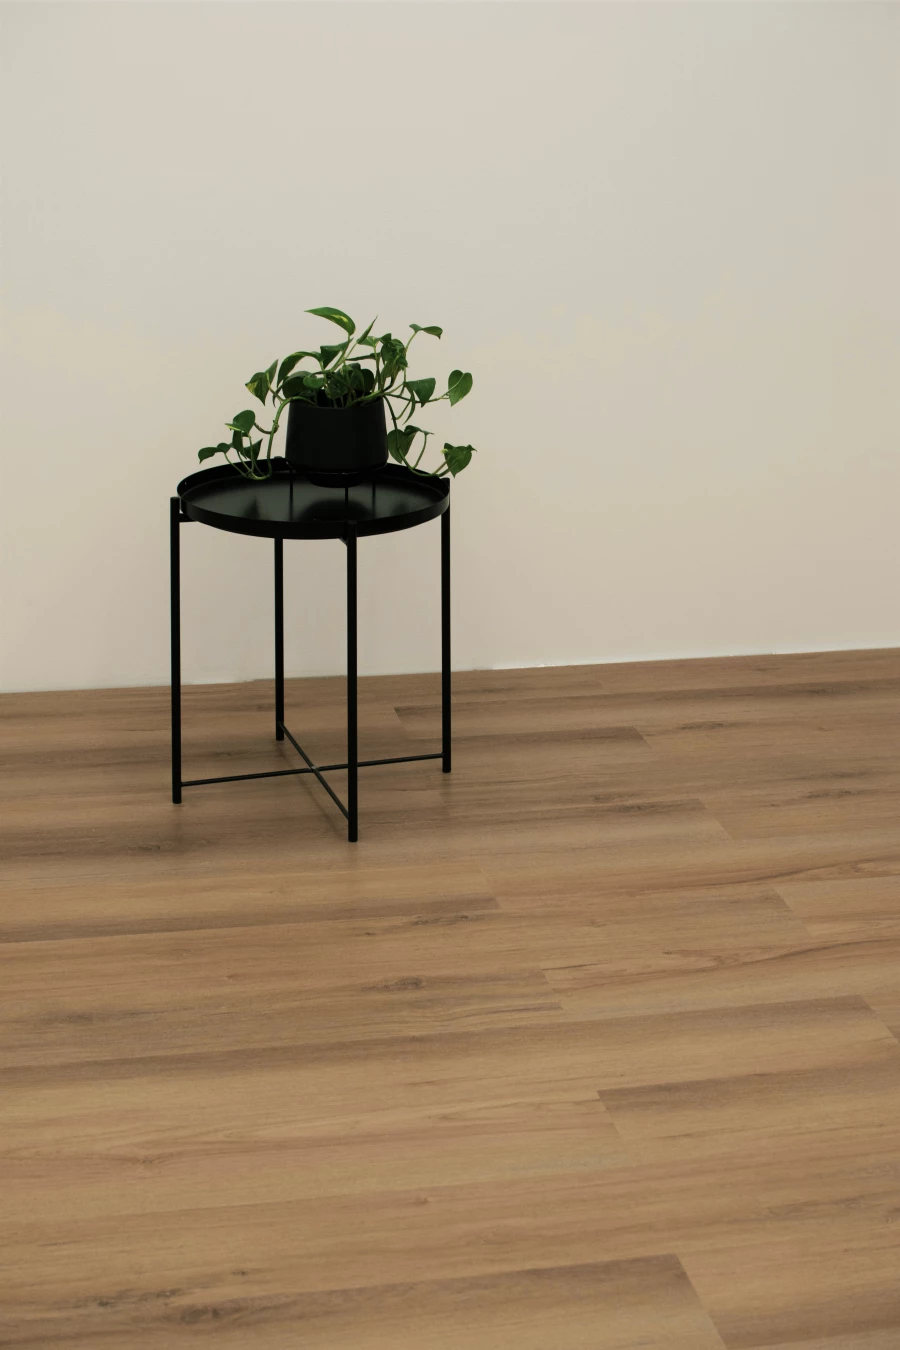 Vinylboden NATURAL WOOD - natürlicher Holz-Look